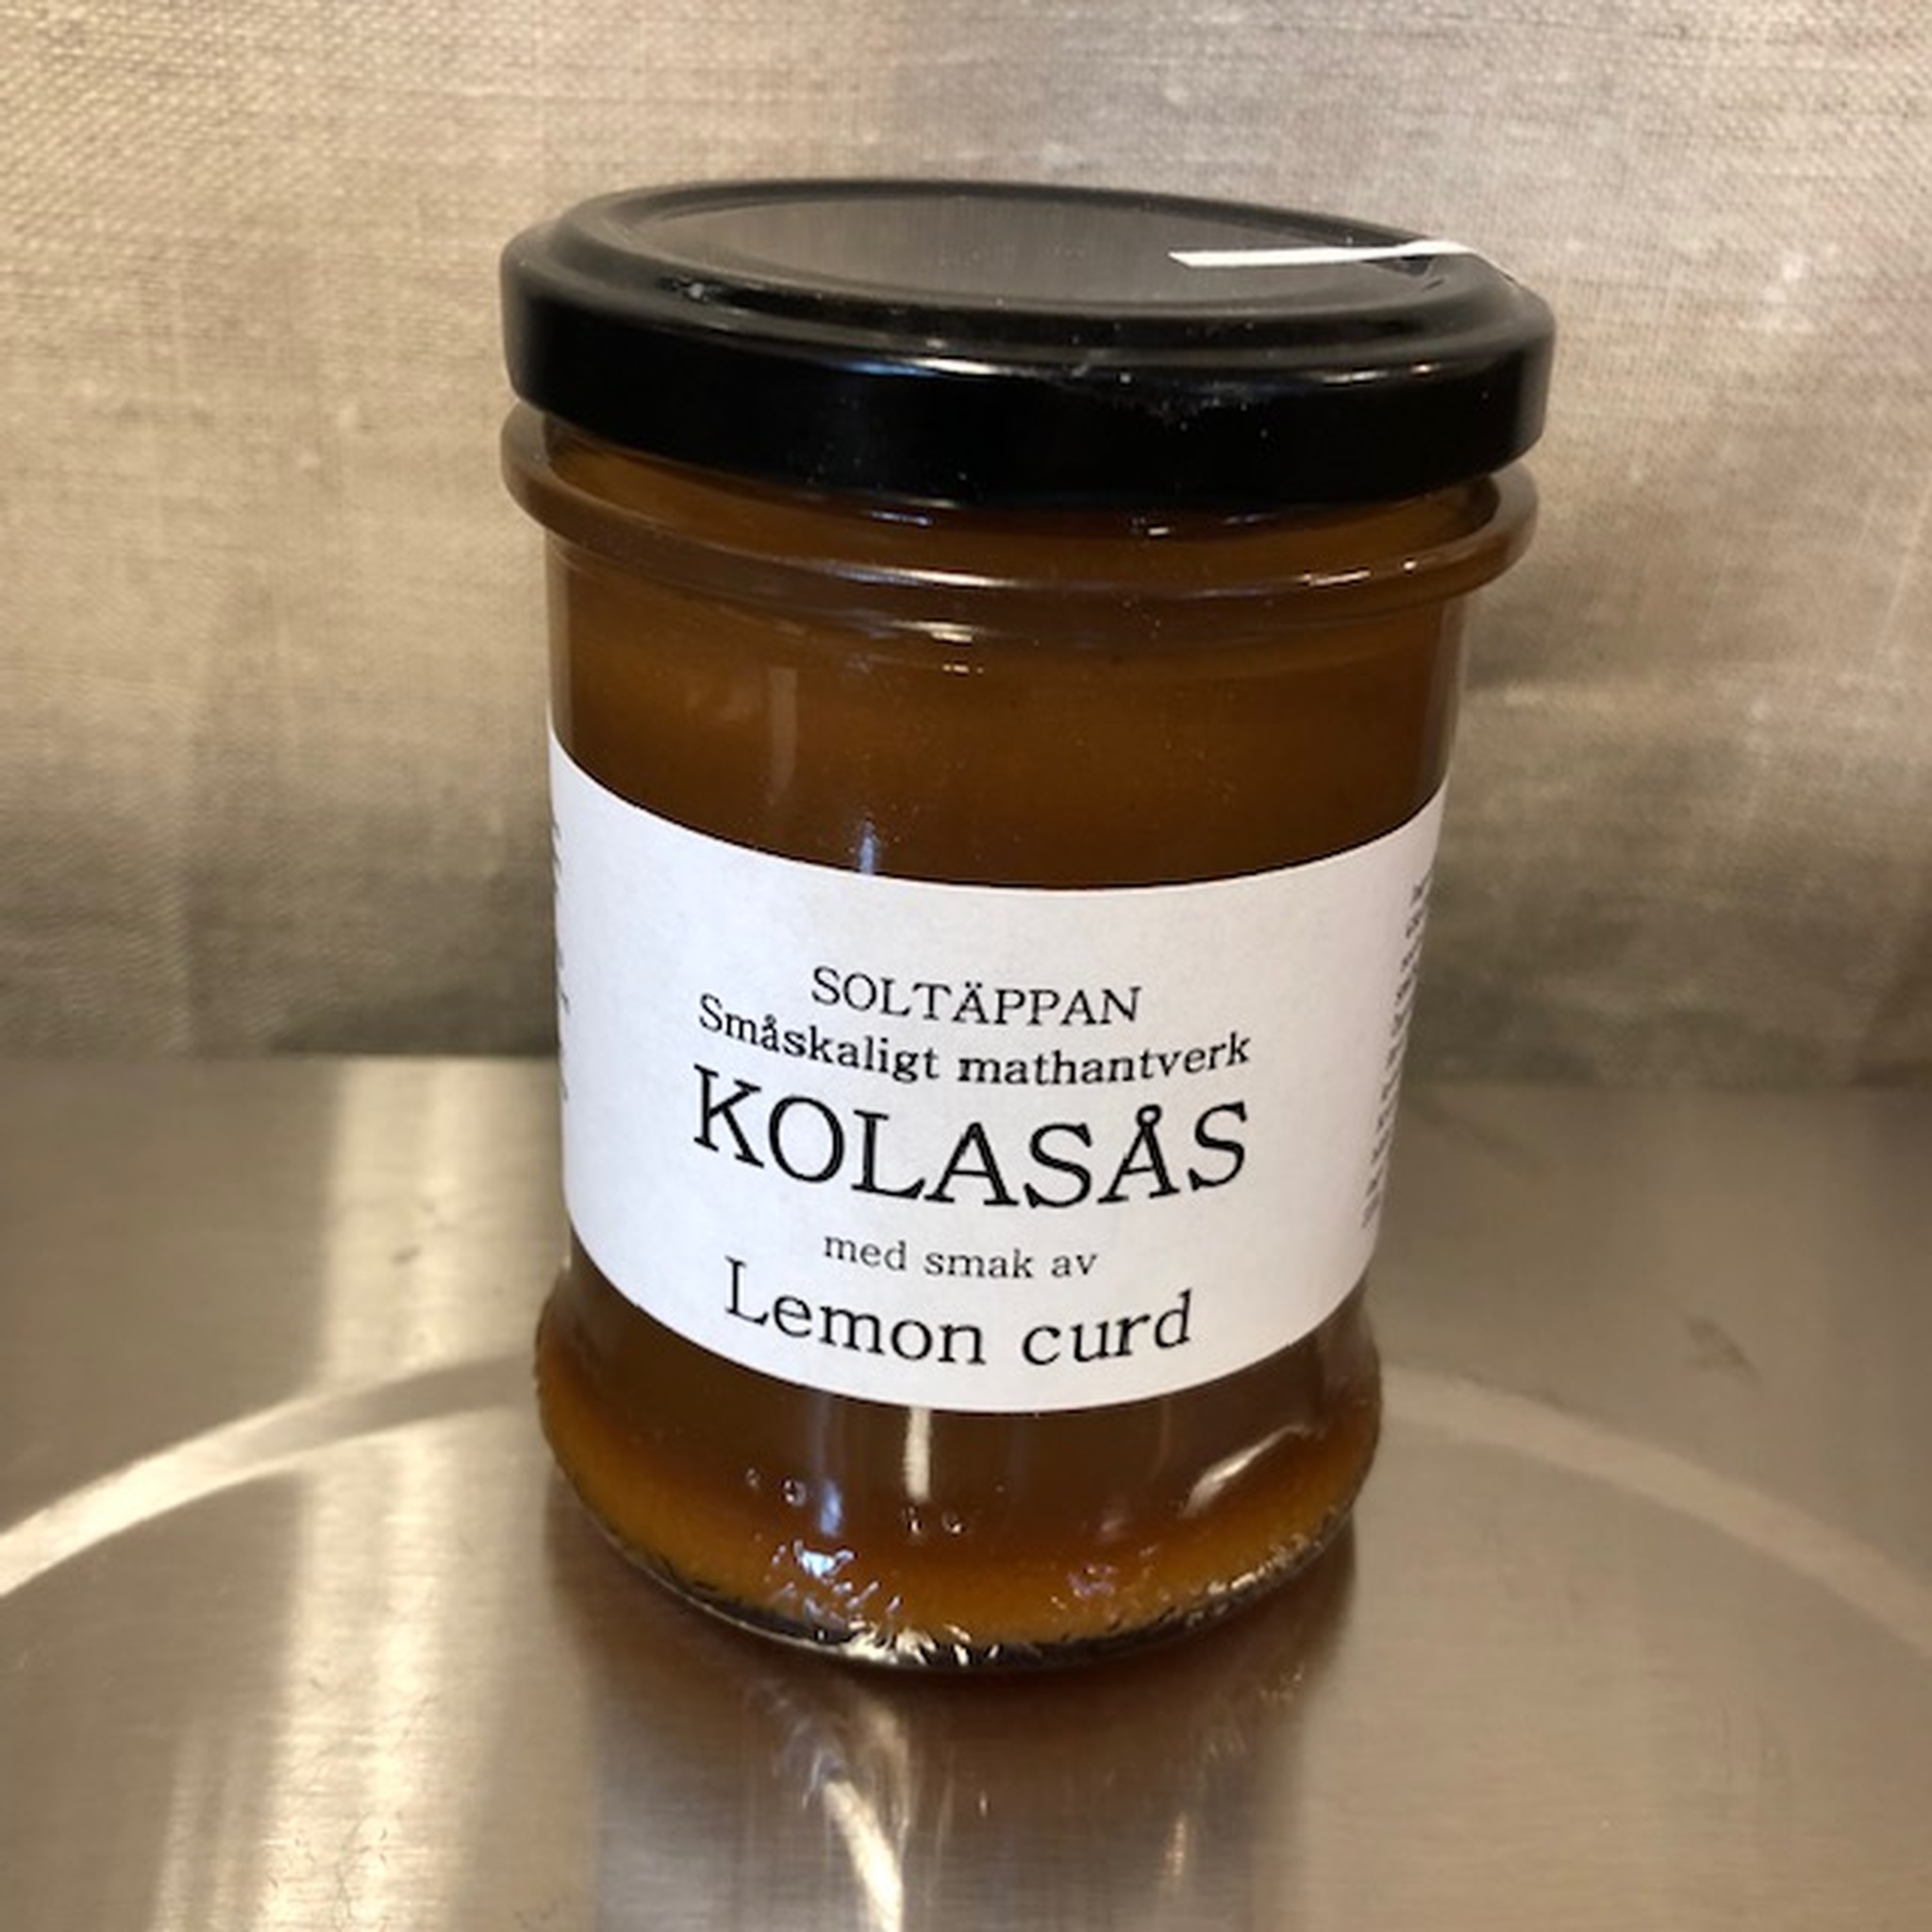 Soltäppans Kolasås, 220g - Finns i flera smaker